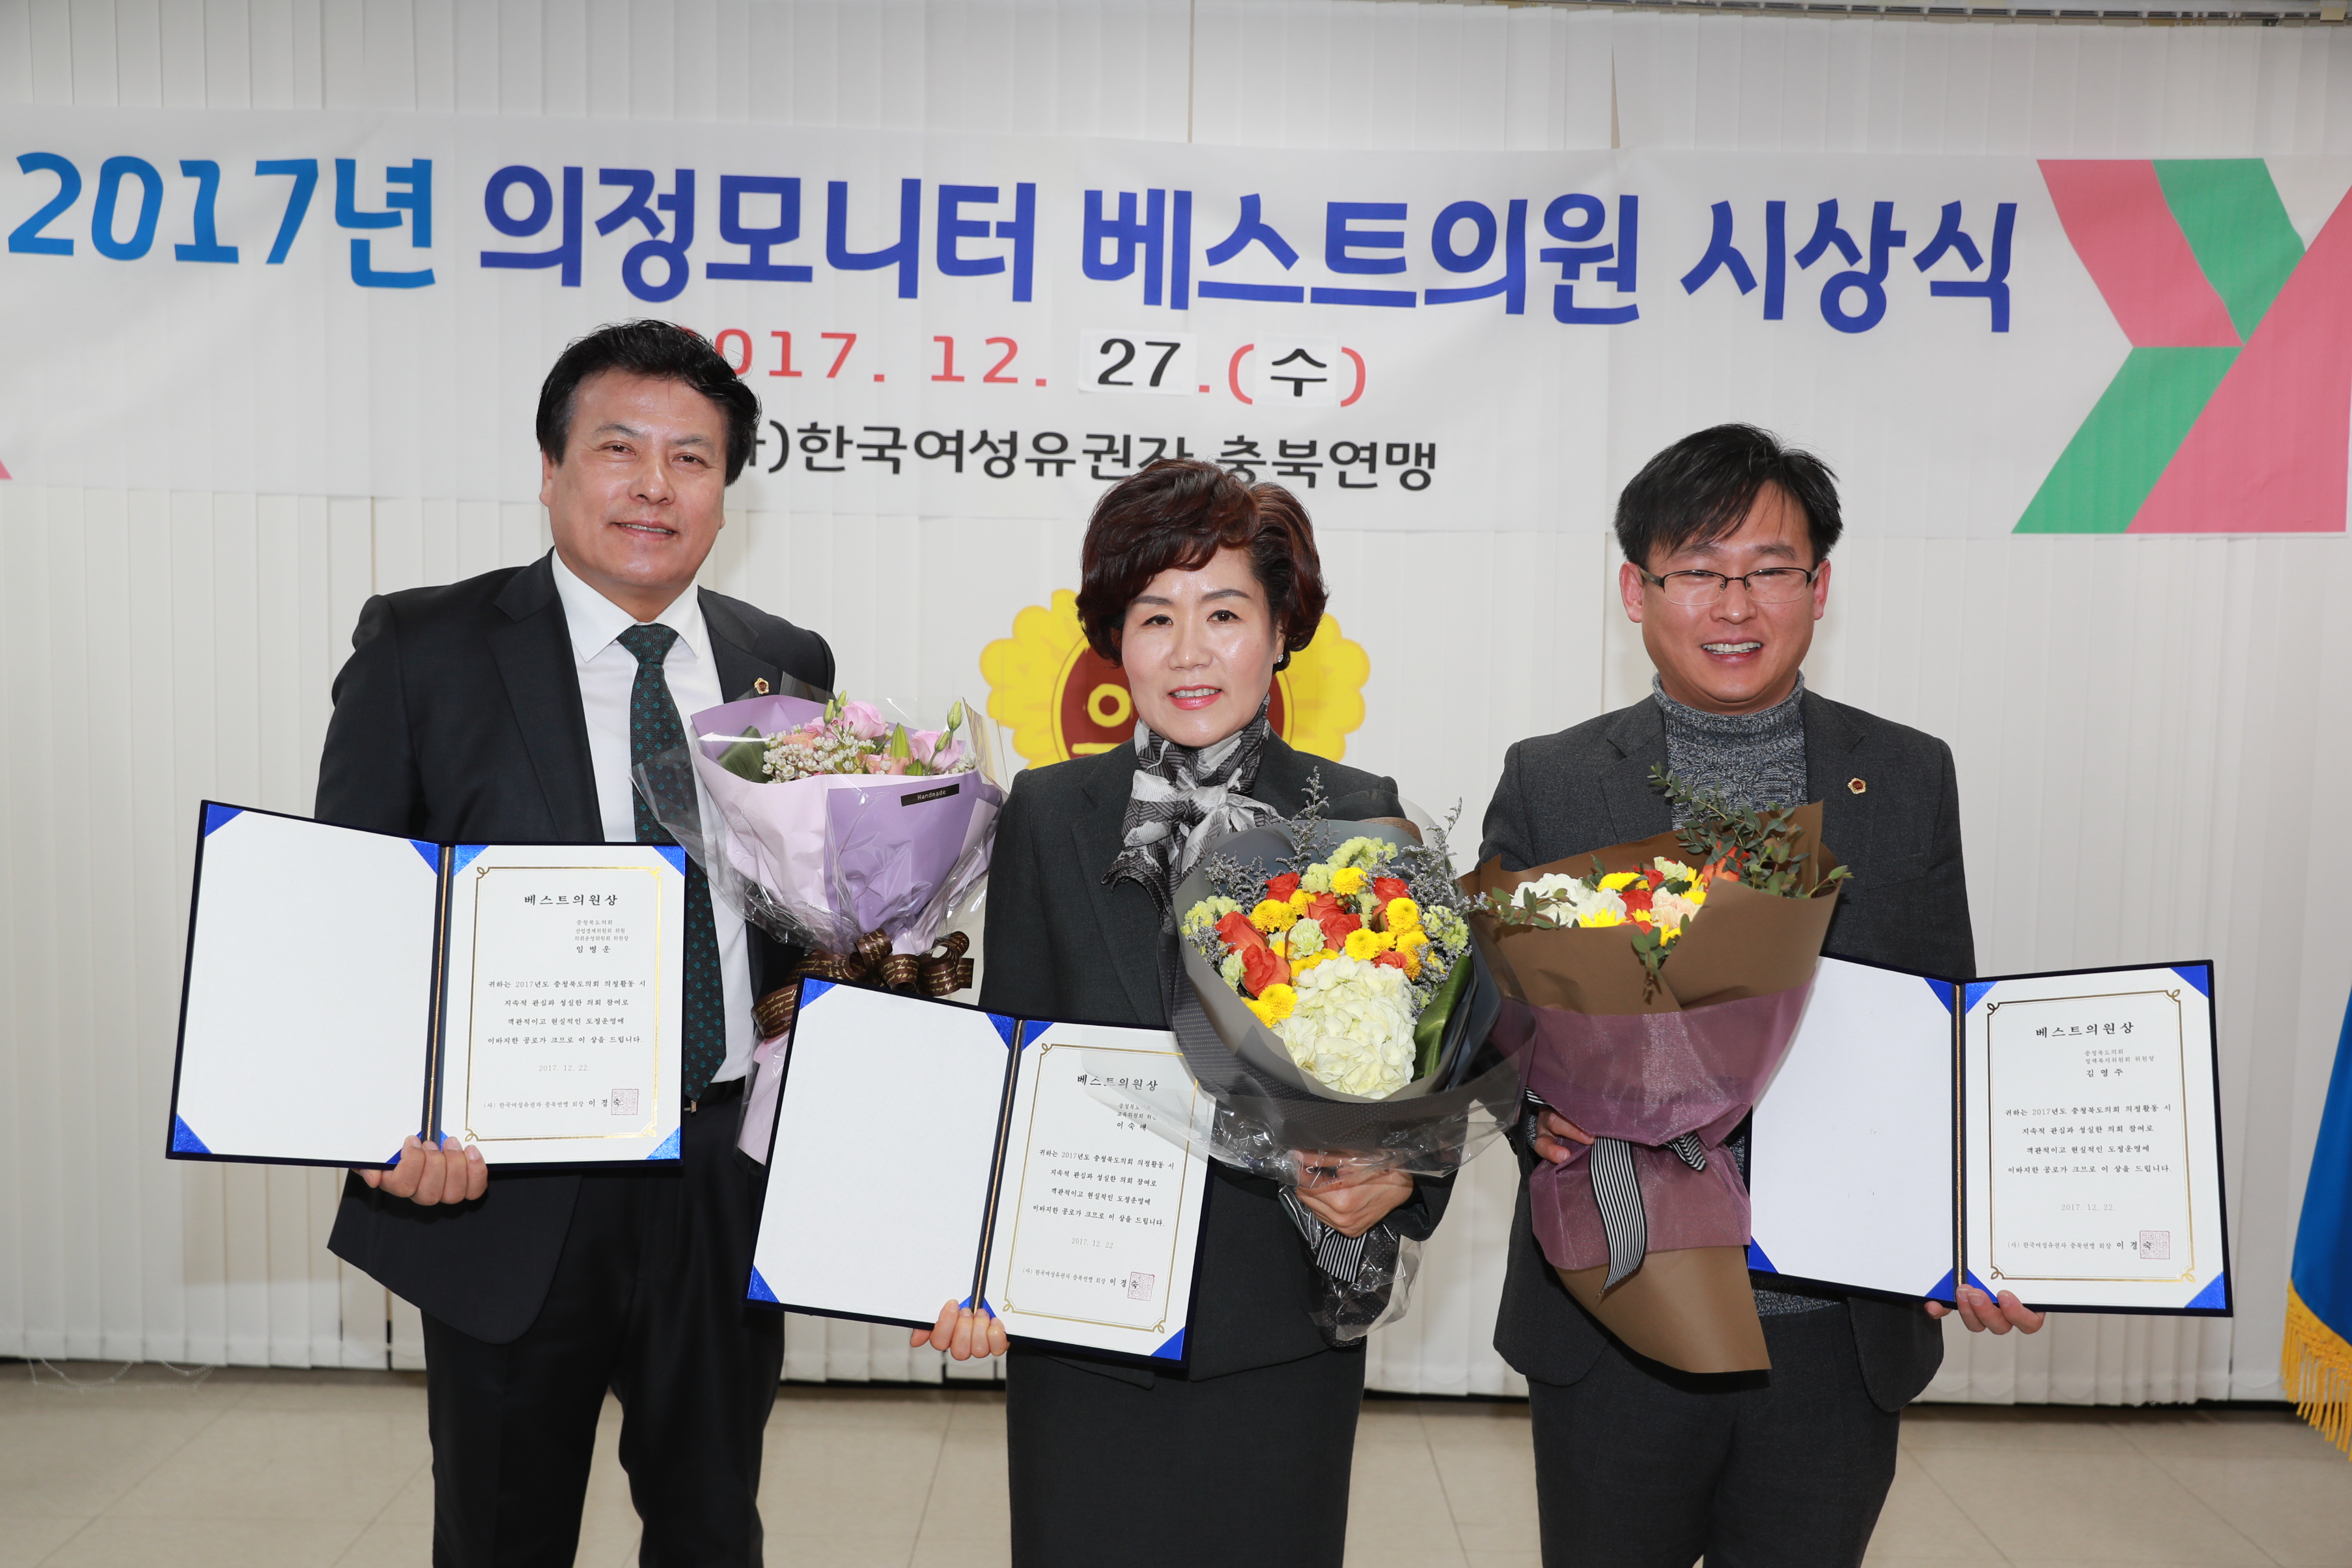 김영주 정책복지위원장, 2017년도 베스트의원 수상 - 1